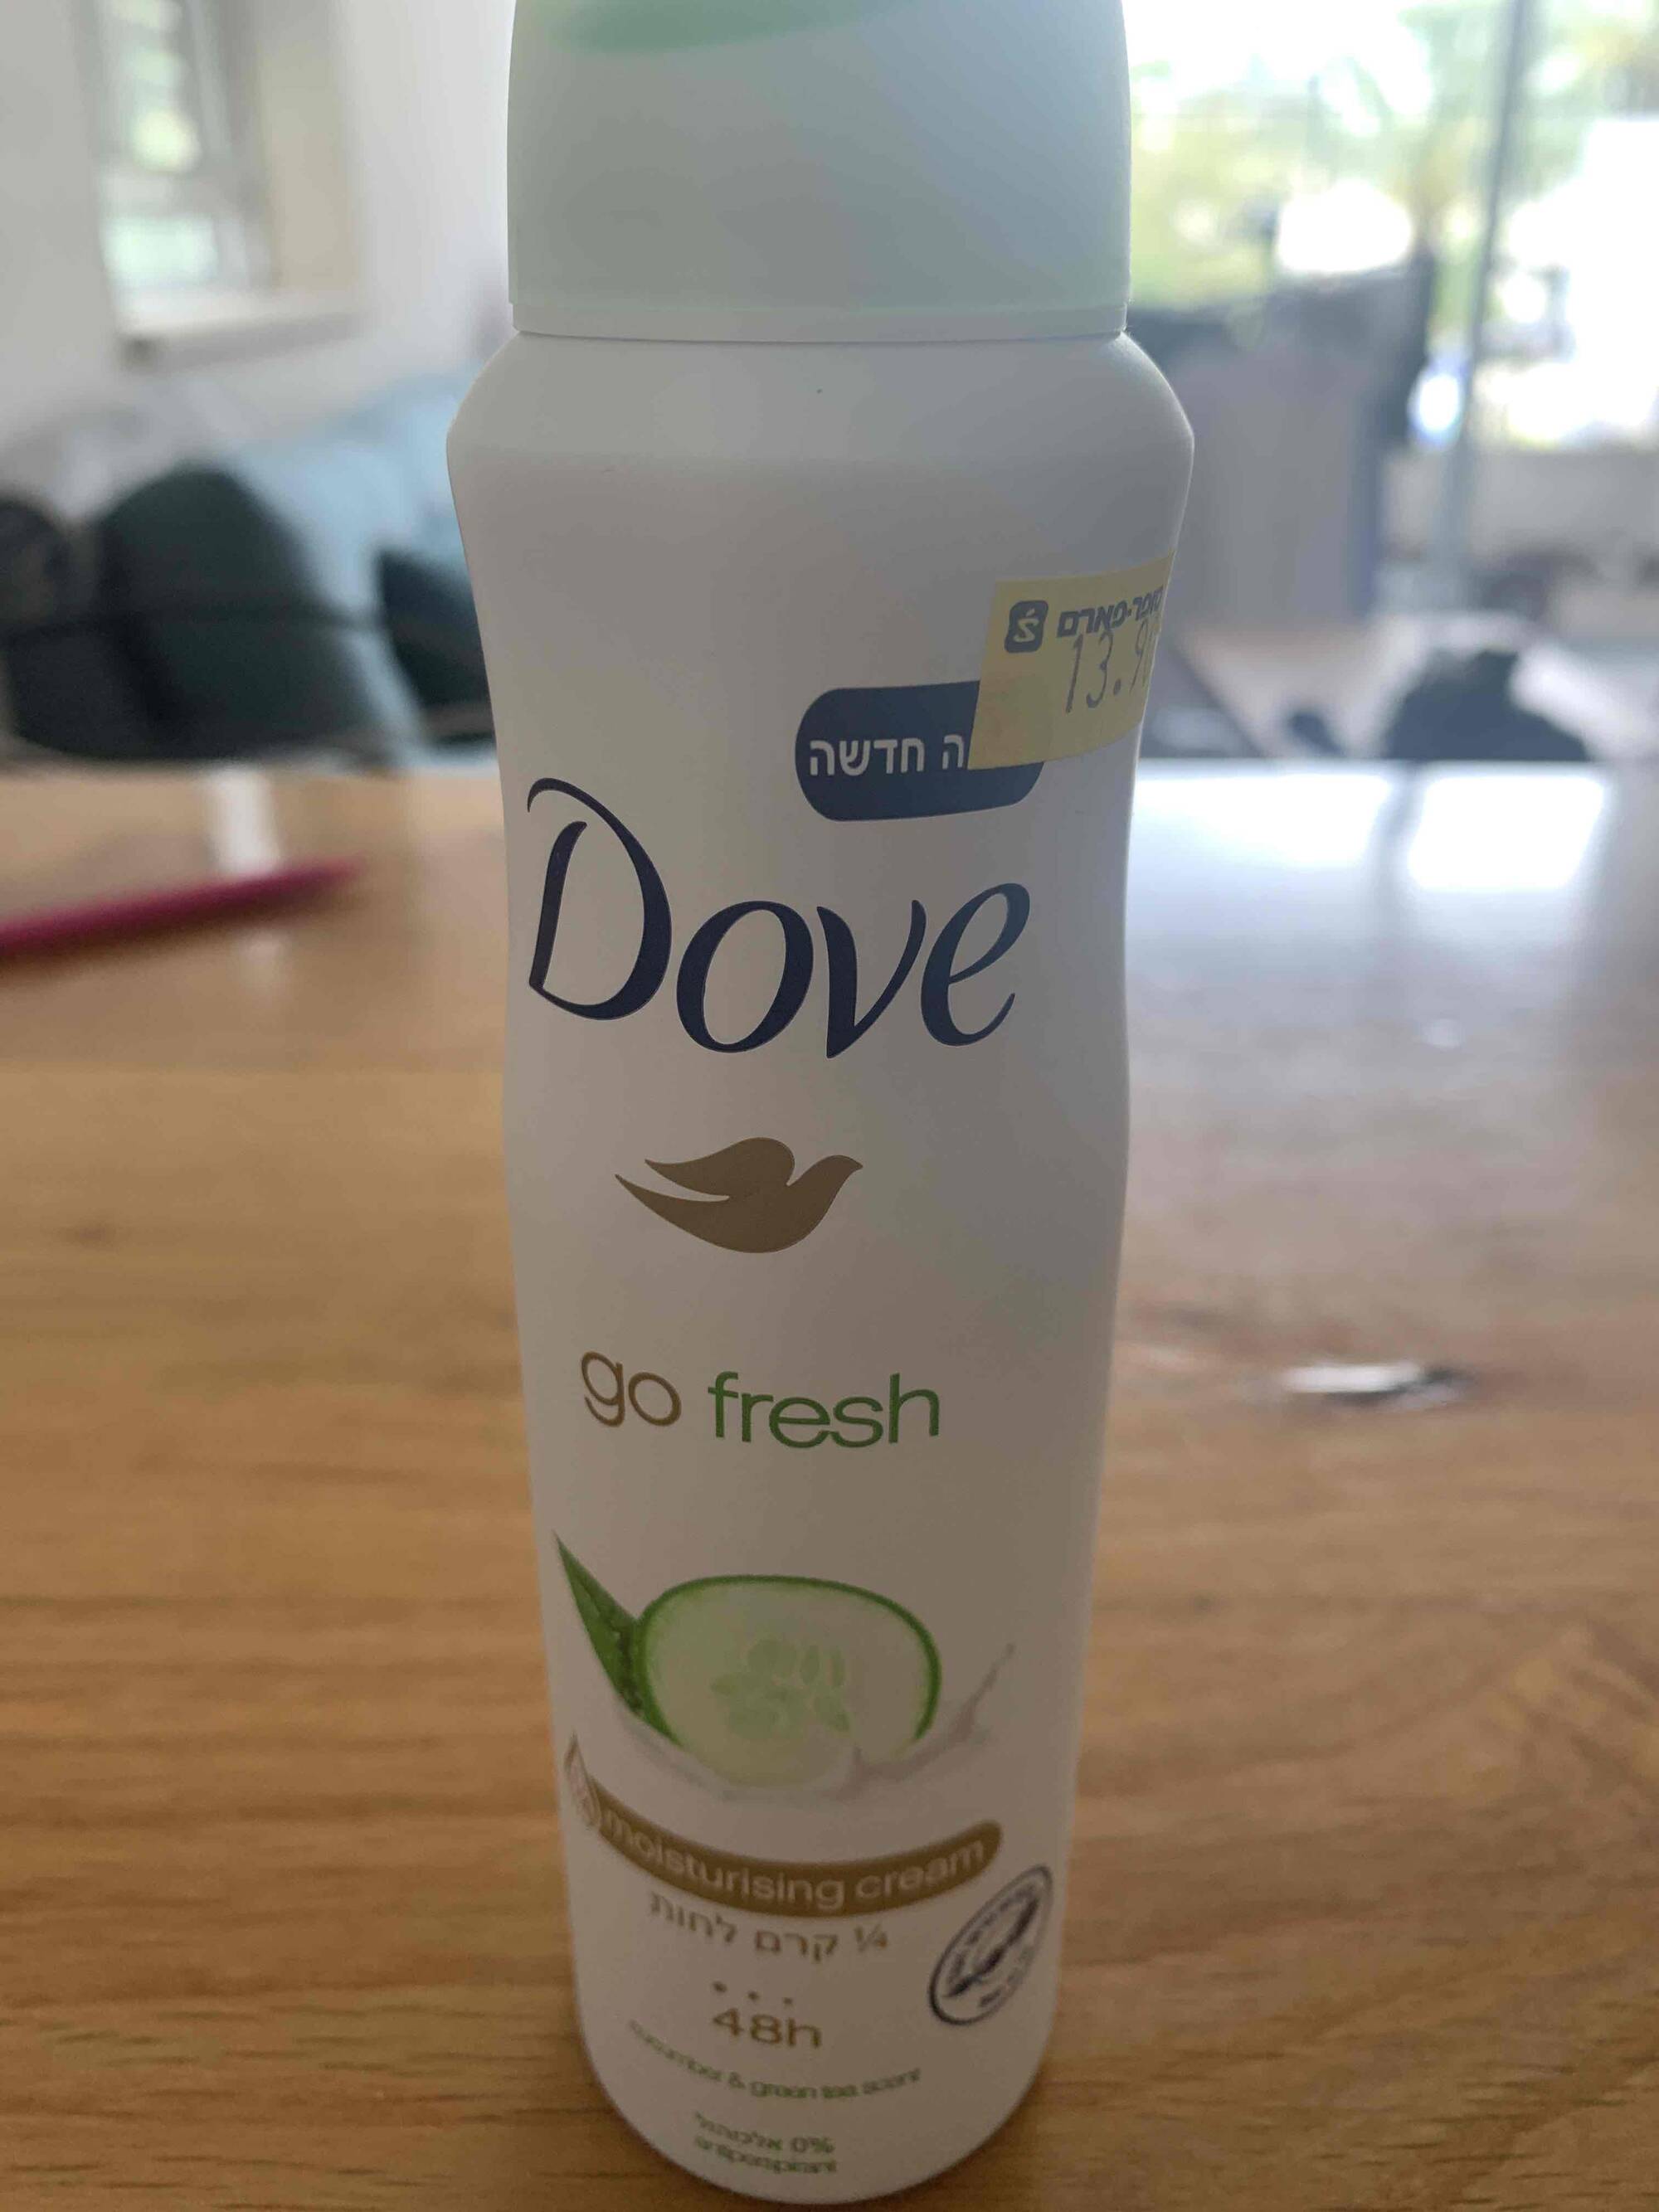 DOVE - Go fresh - Déodorant 48h